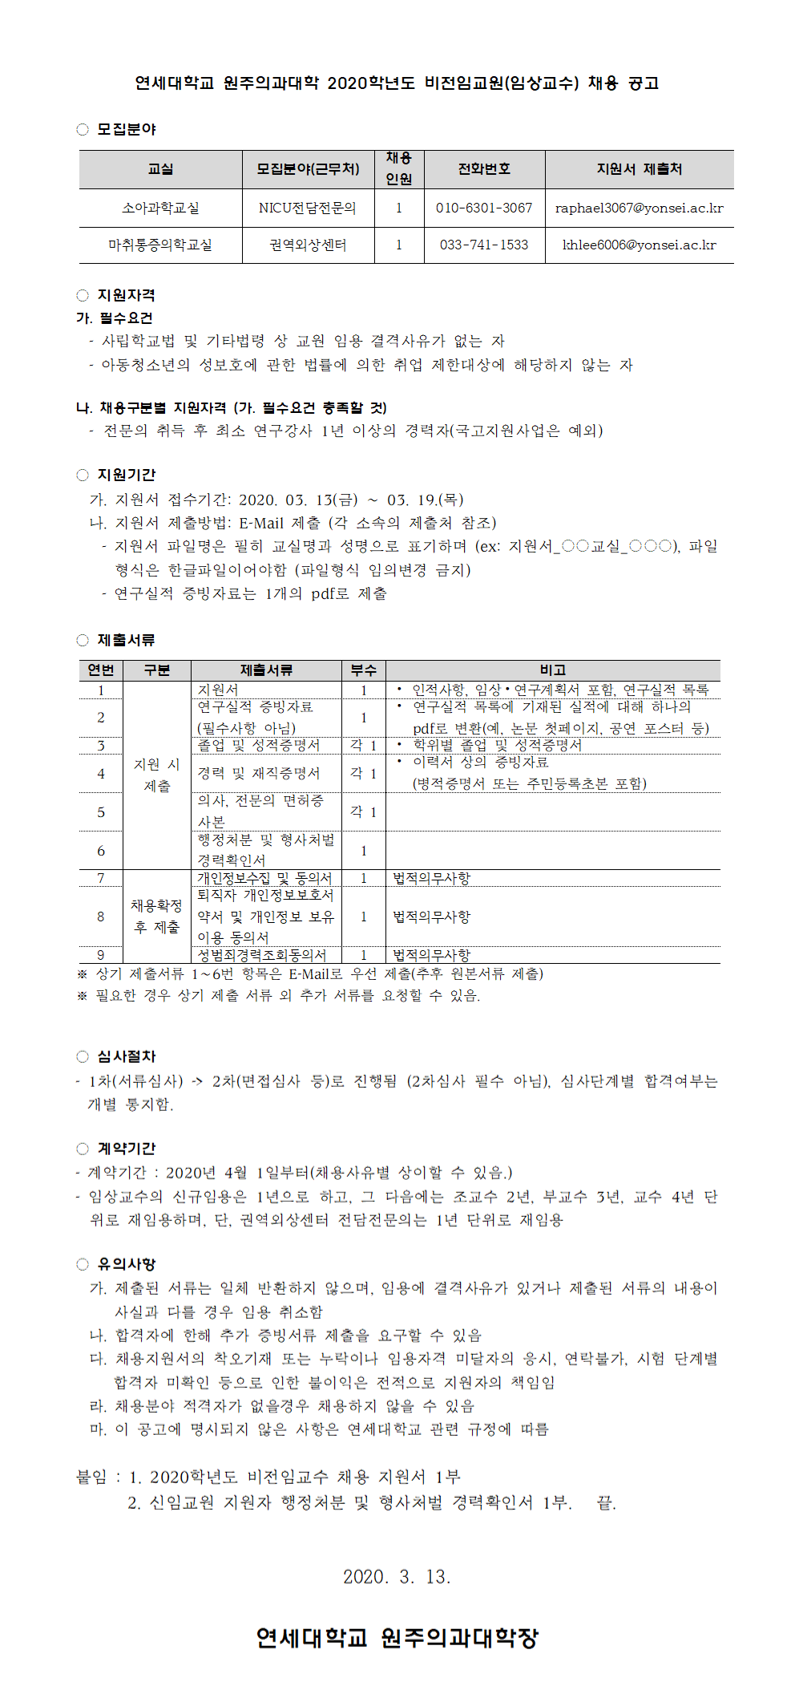 2020 임상교원 신규채용 공고문(7차).png